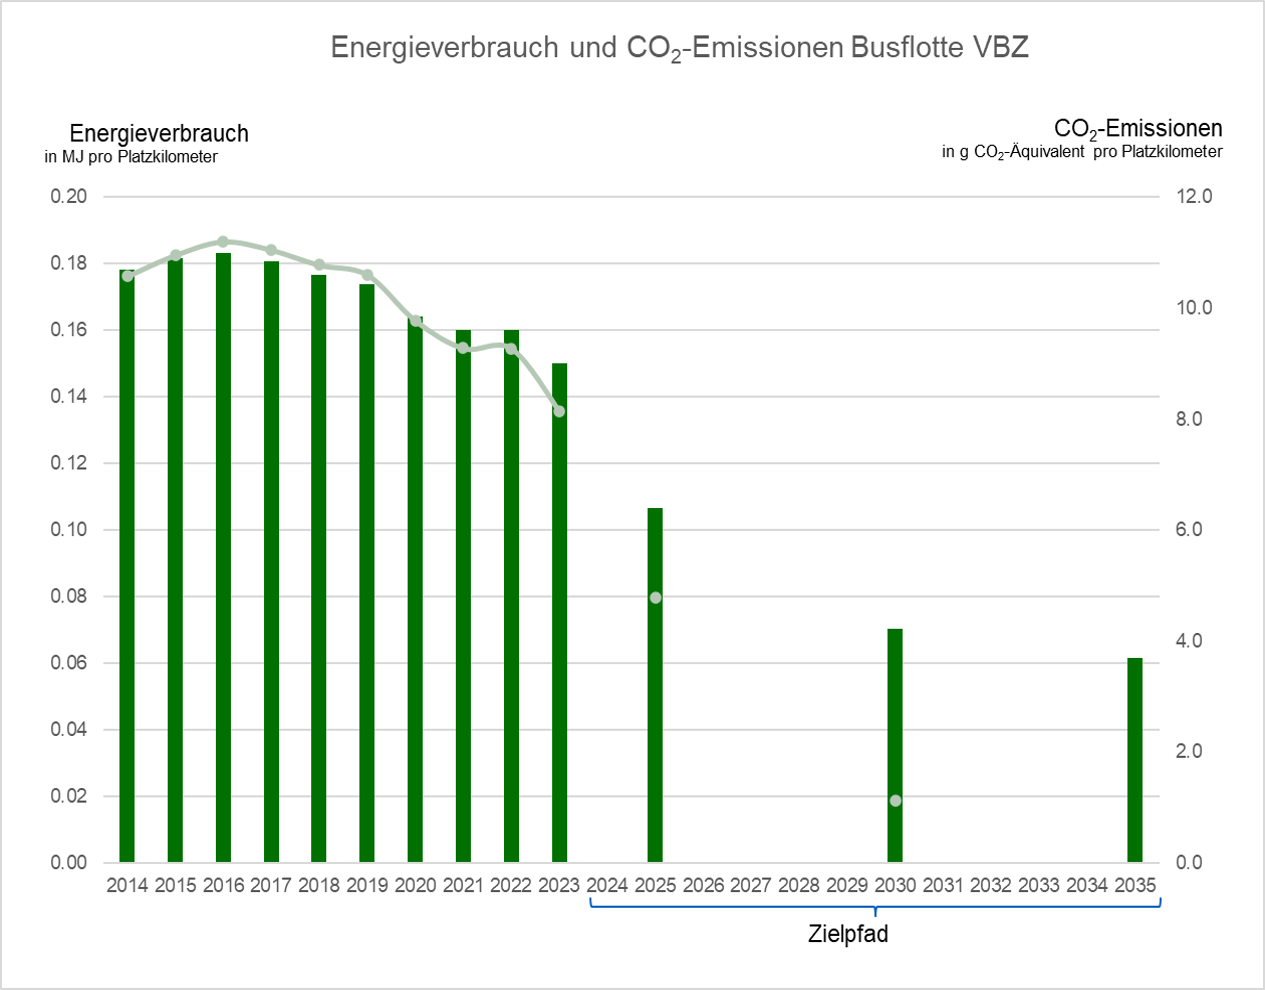 Energieverbrauch und CO2-Emissionen der VBZ-Busflotte